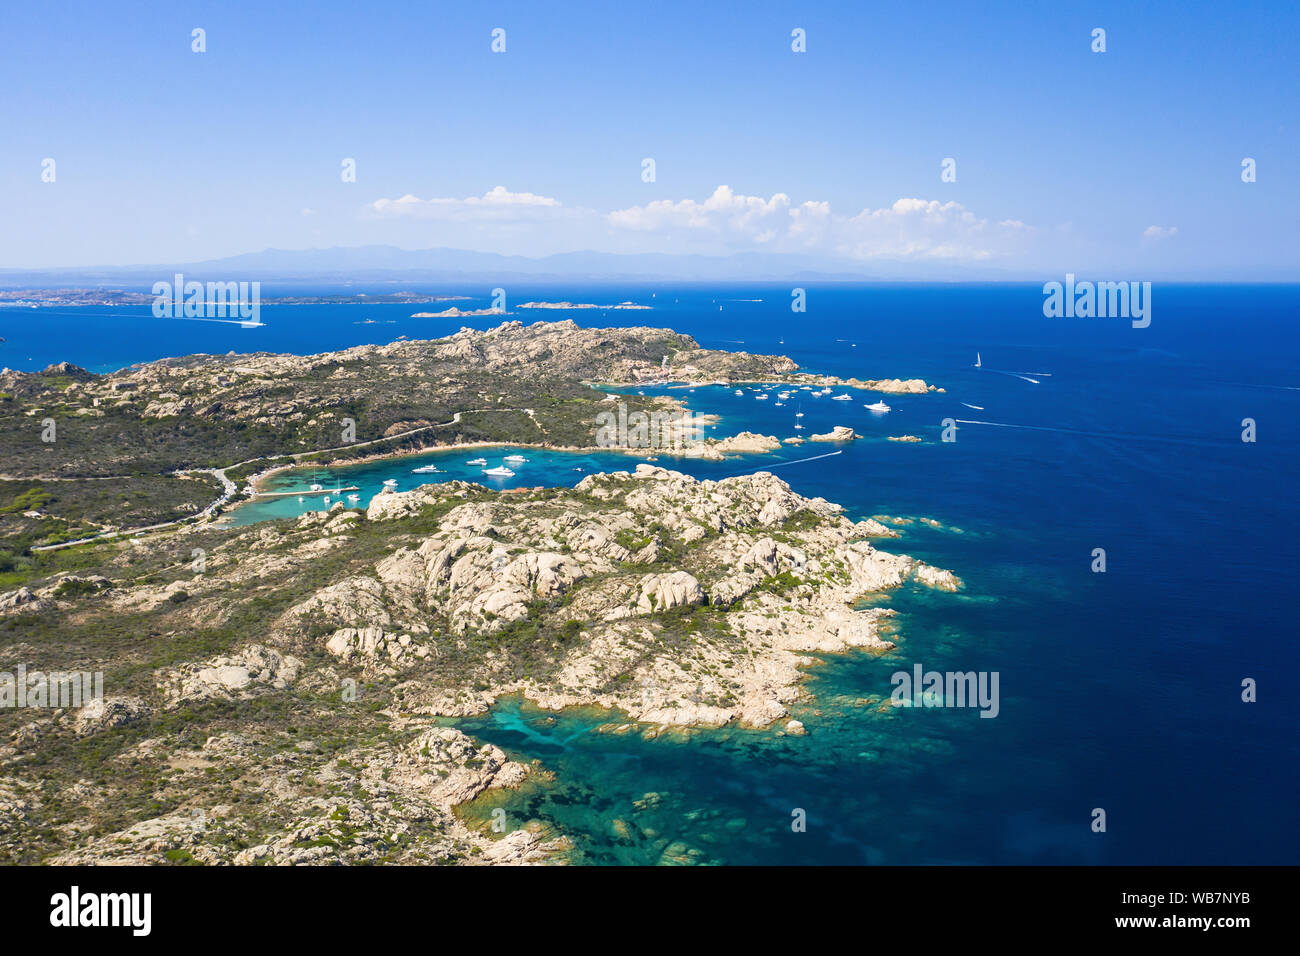 Vue de dessus, superbe vue aérienne de l'archipel de la Maddalena en Sardaigne avec belles baies de la mer turquoise. Arcipelago de La Maddalena, en Sardaigne. Banque D'Images